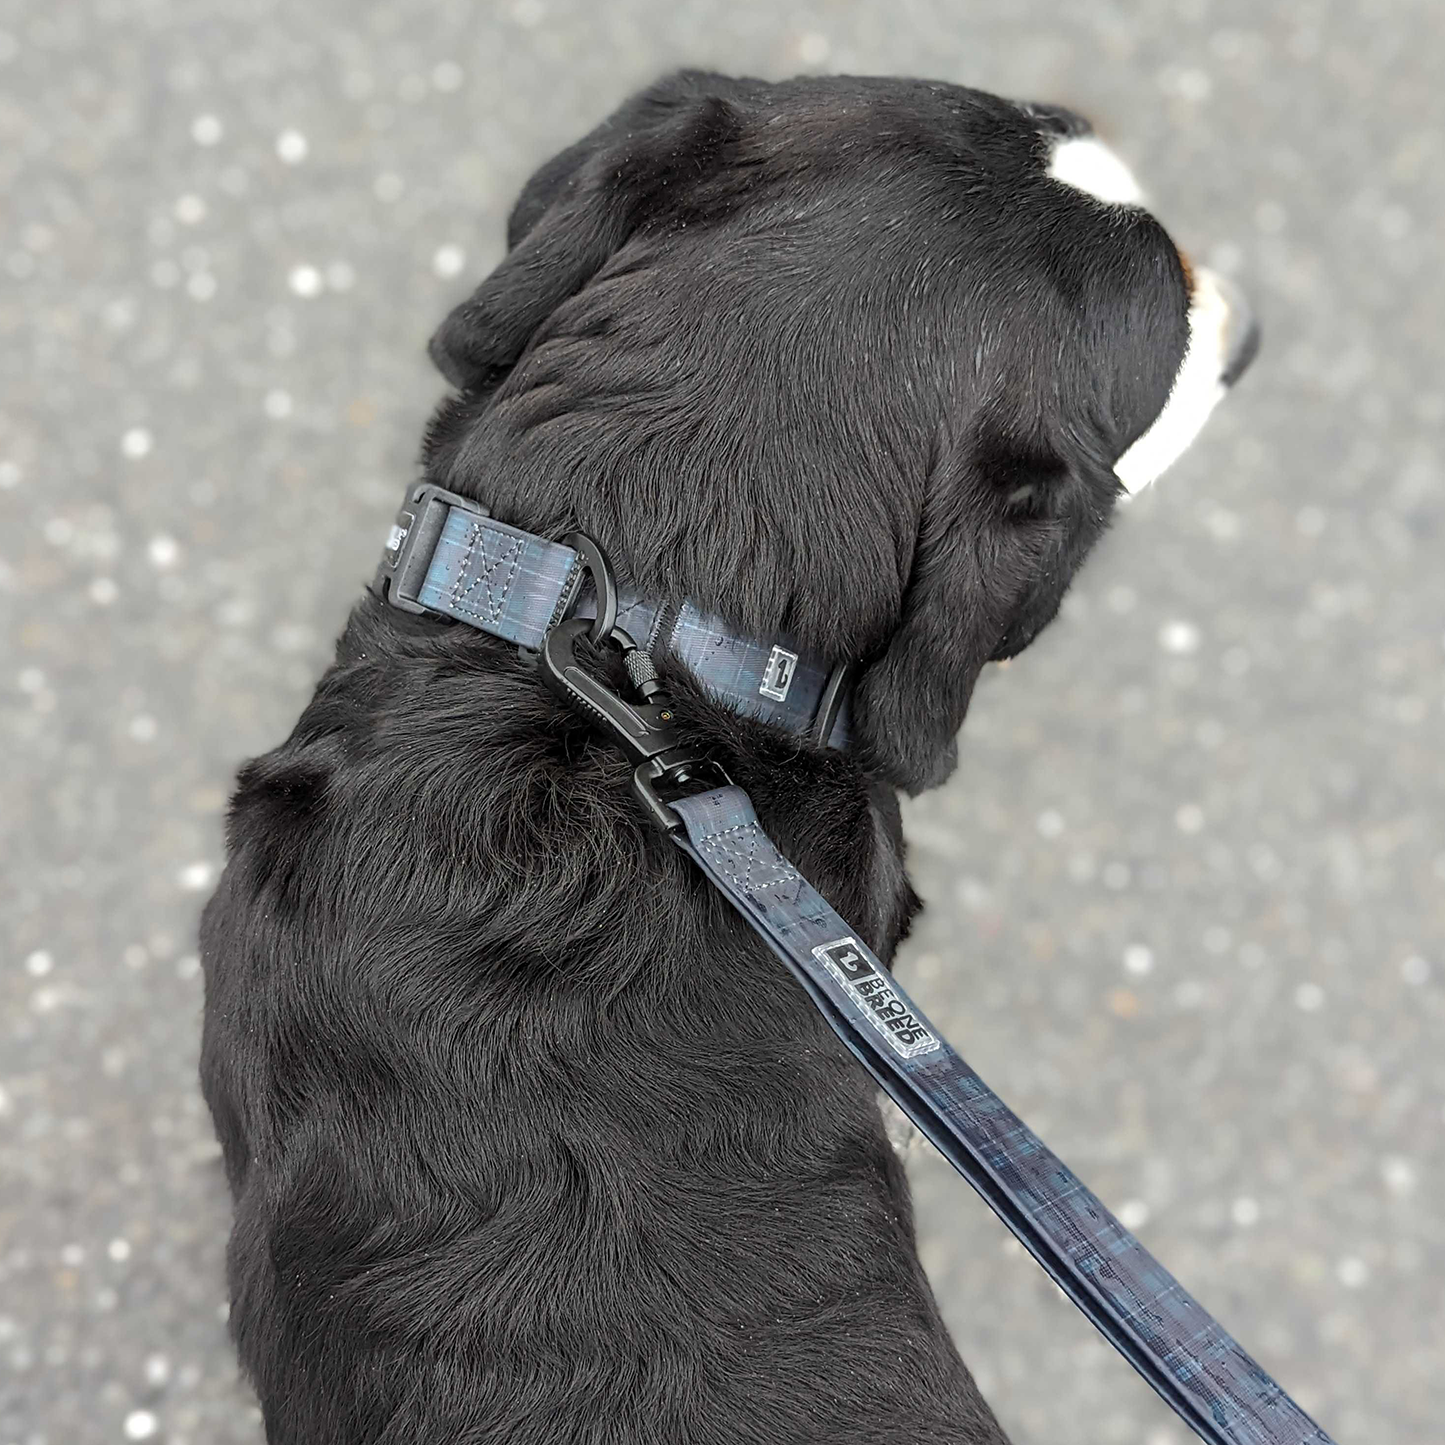 Silicone leash for dog, varsity plaid style